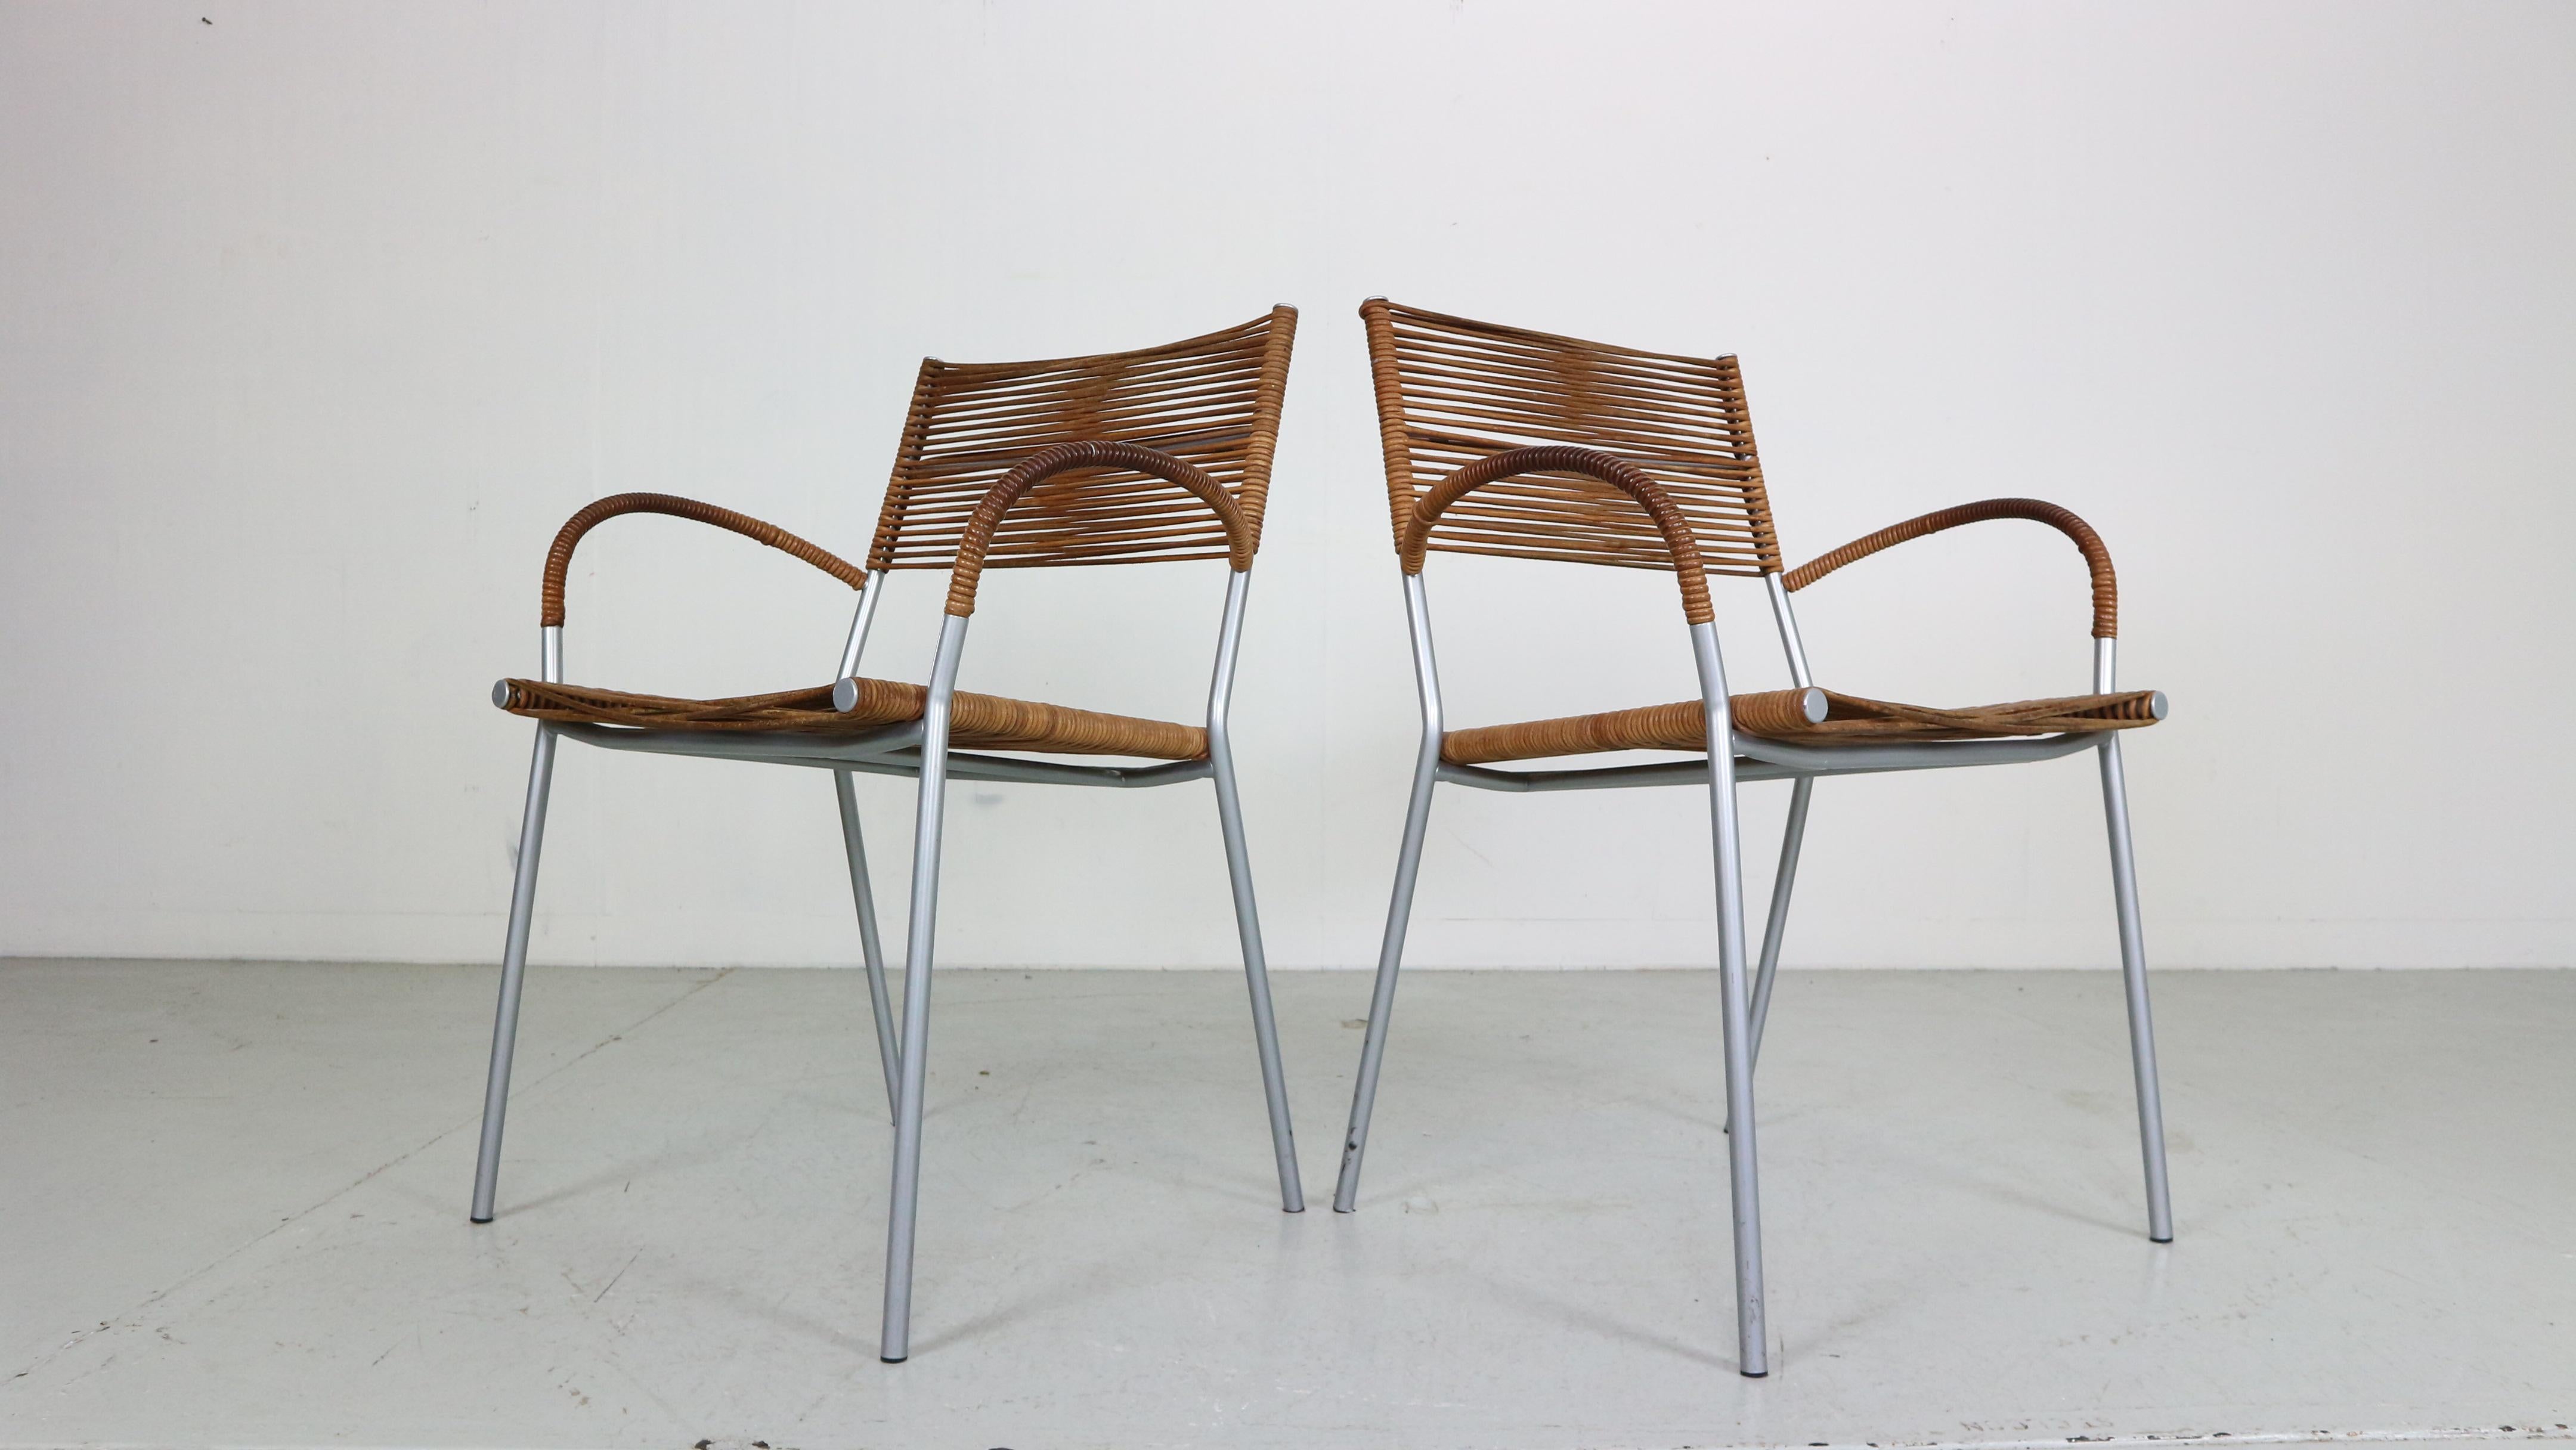 Mid-Century Modern Zeitraum schöne Satz von 2 dinning / Sessel Stühle von Tito Agnoli entworfen und werden von Bonacin, 1990 Zeitraum Italien hergestellt.
Zeitloses italienisches Qualitätsdesign.

Modellnummer - Mis B2 RVS.
Ursprünglich